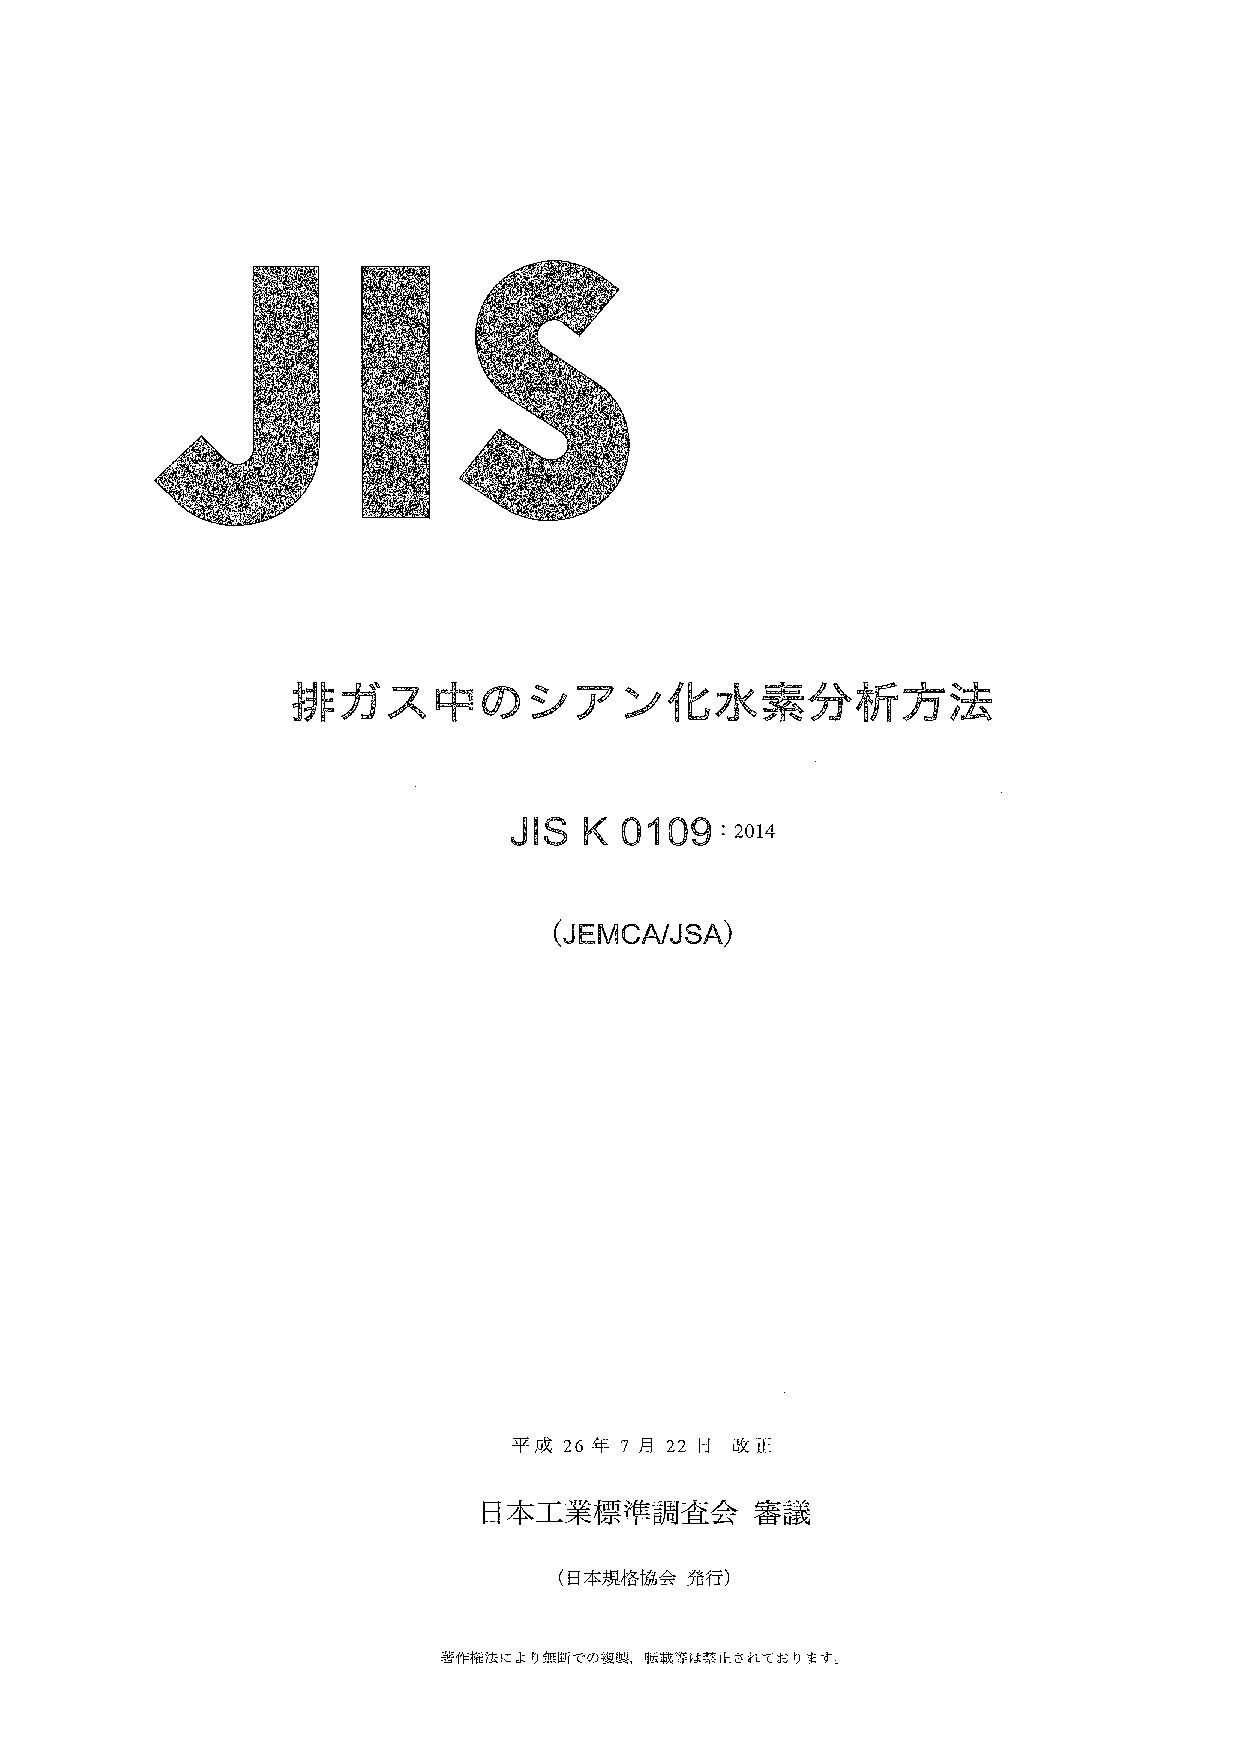 JIS K 0109:2014封面图